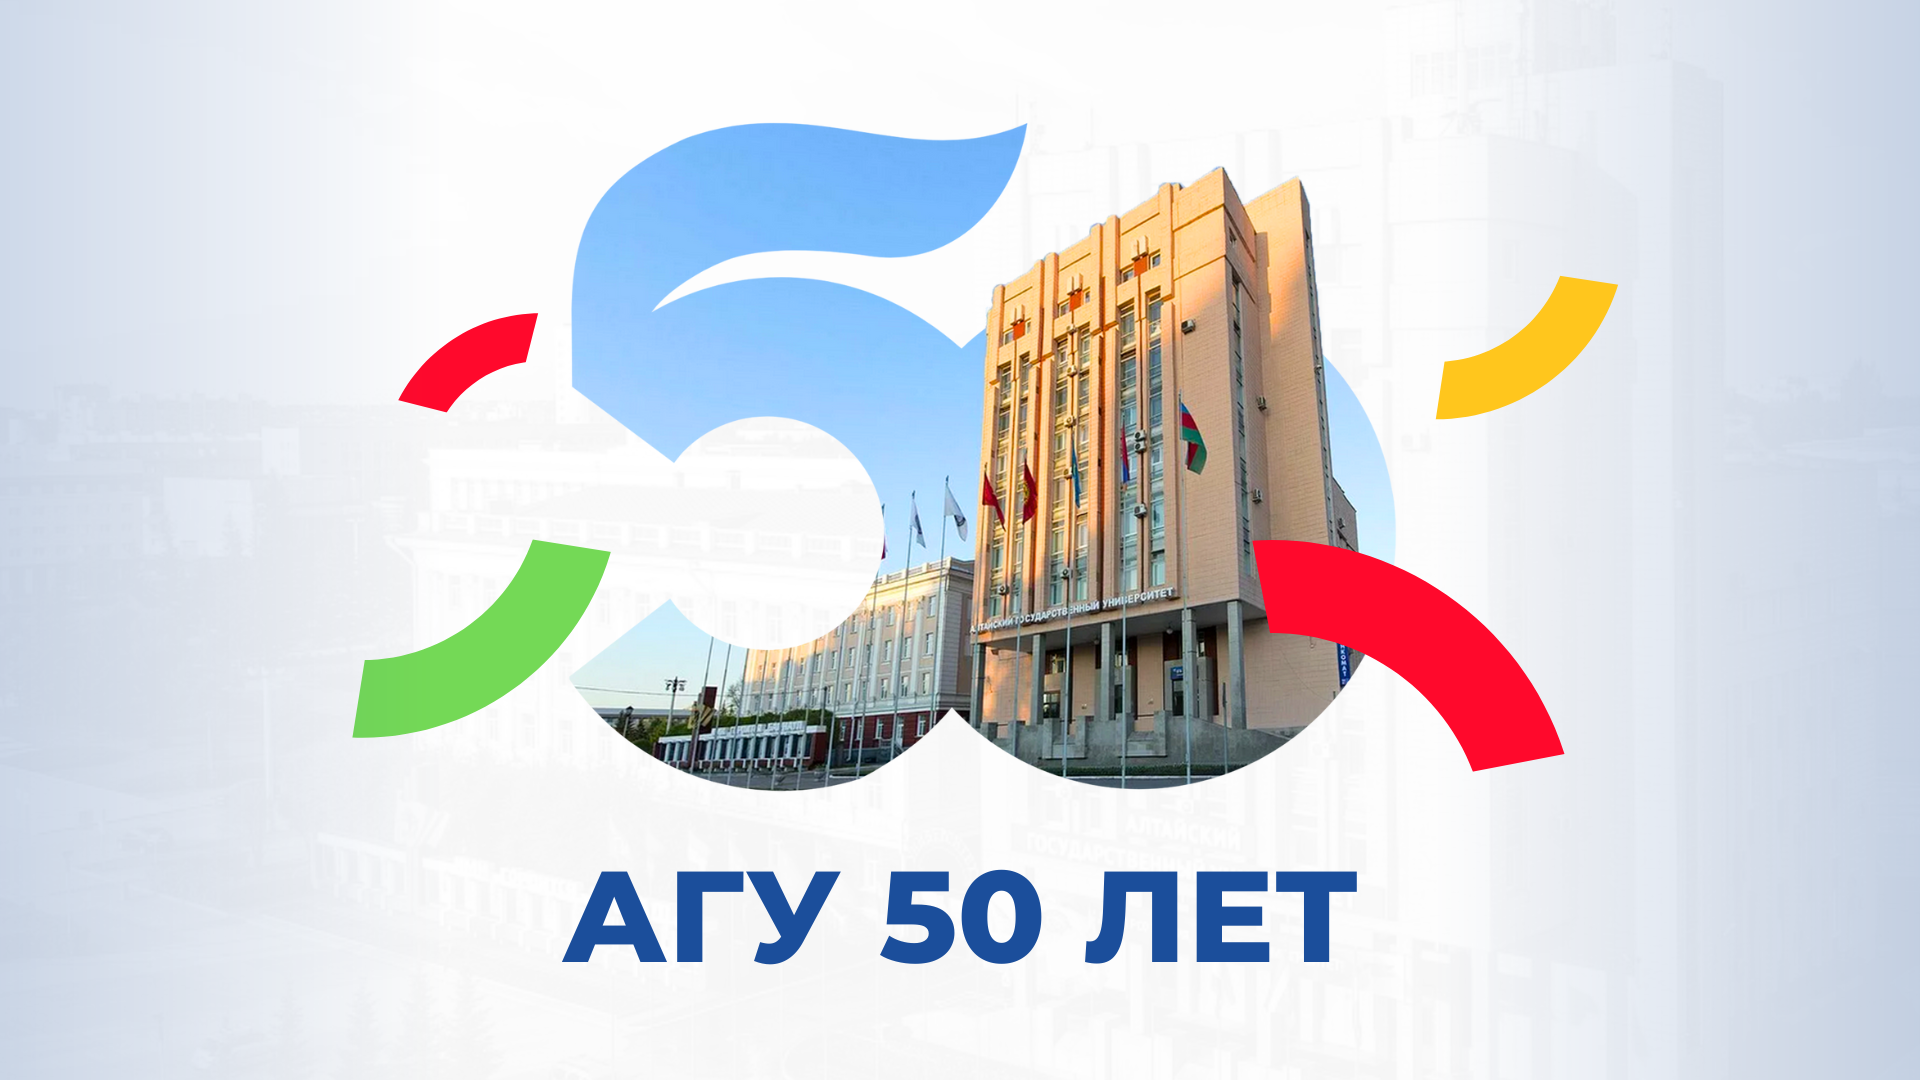 Алтайскому государственному университету 50 лет